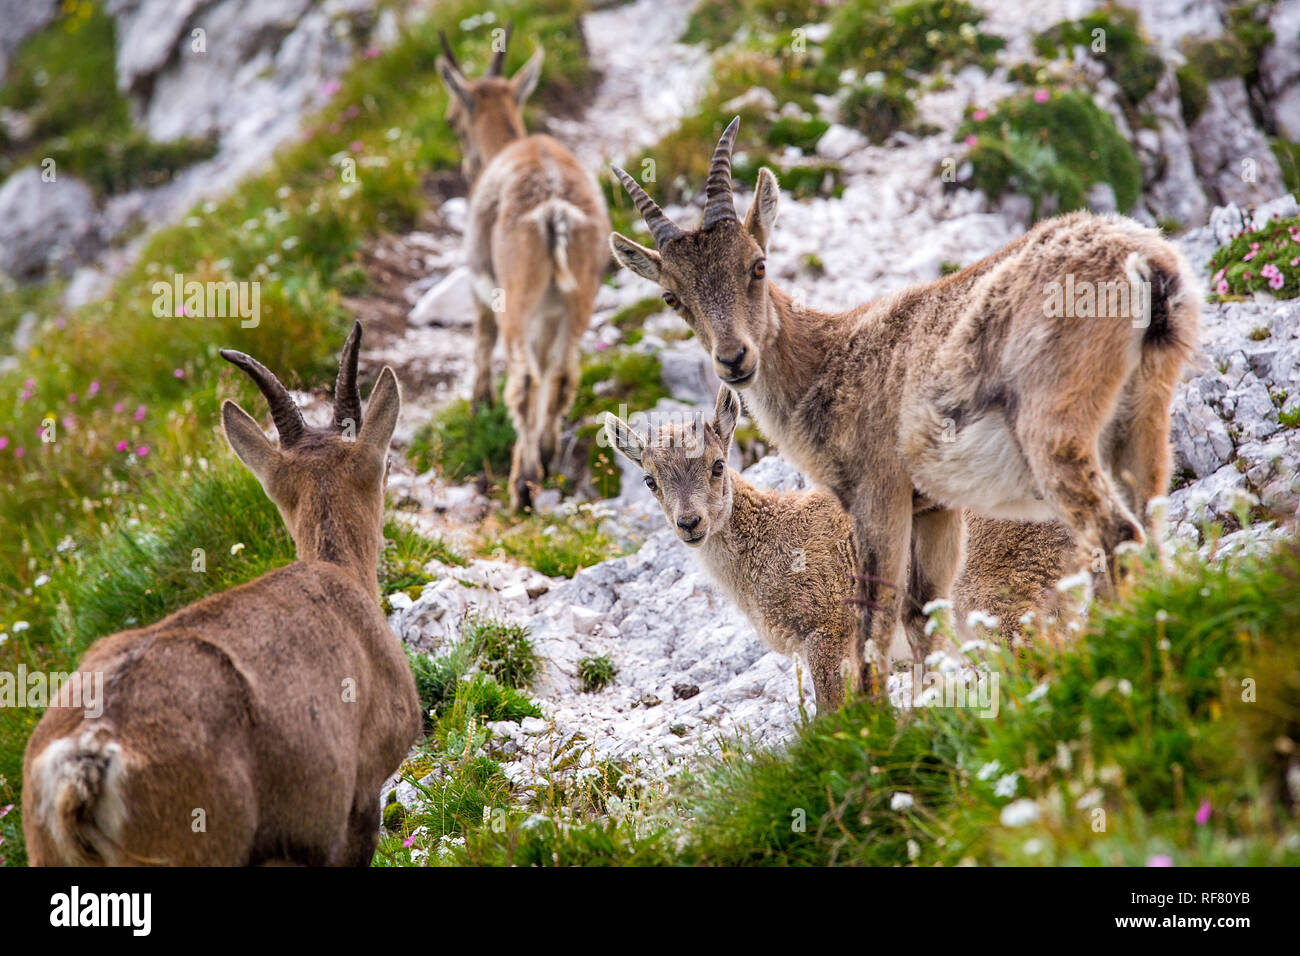 Family of Alpine ibex (Capra ibex) Stock Photo